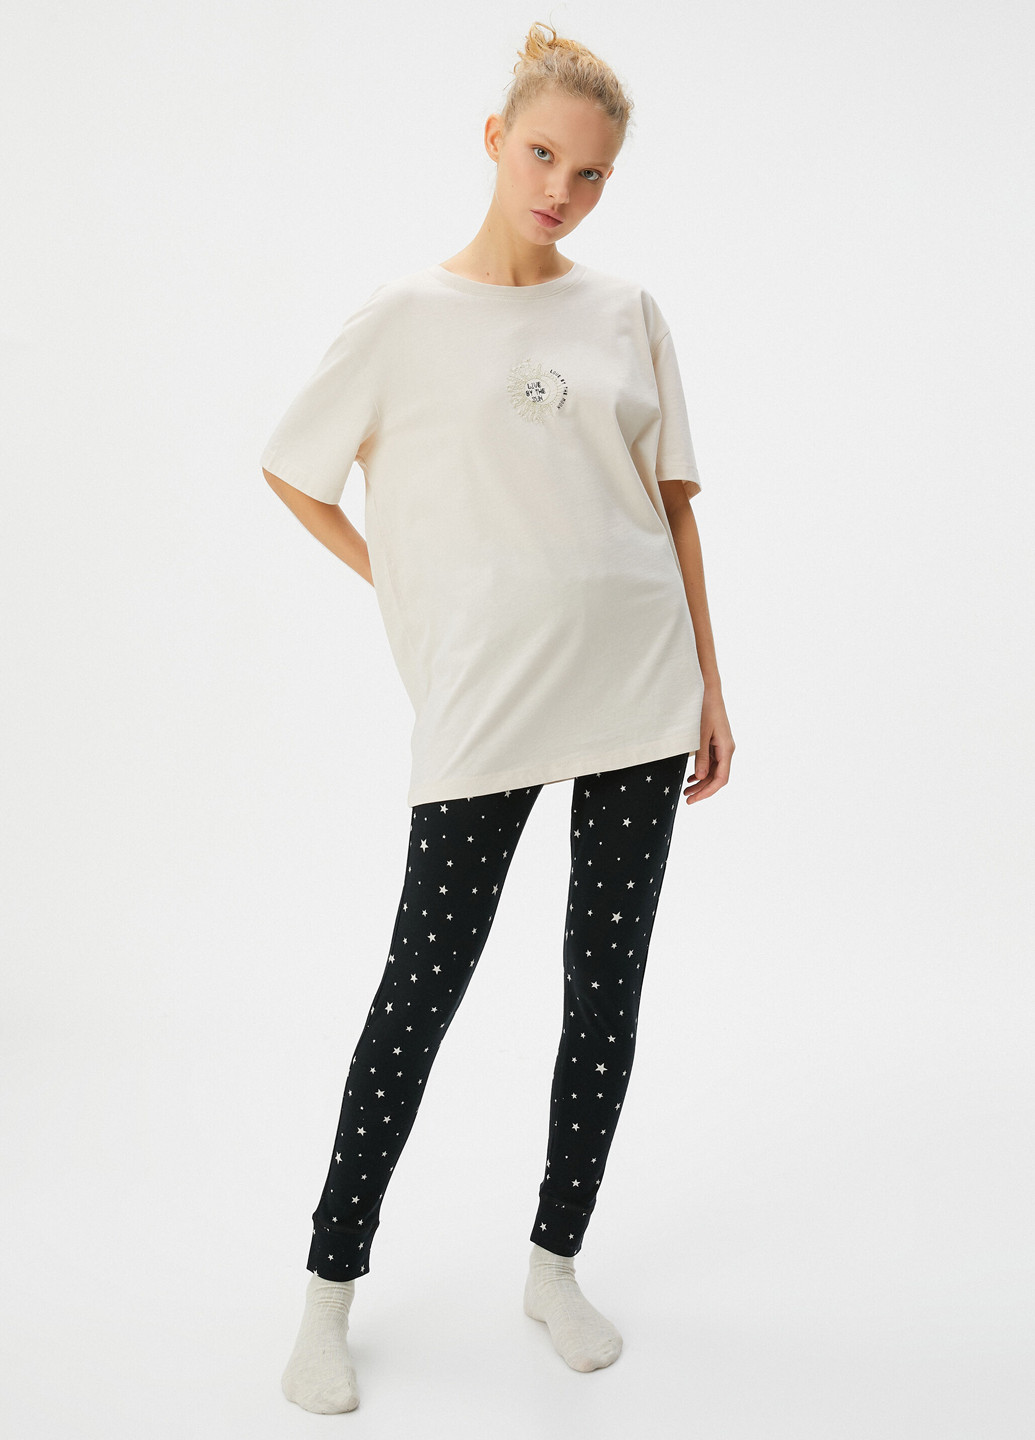 Комбинированная всесезон пижама (футболка, брюки) футболка + брюки KOTON